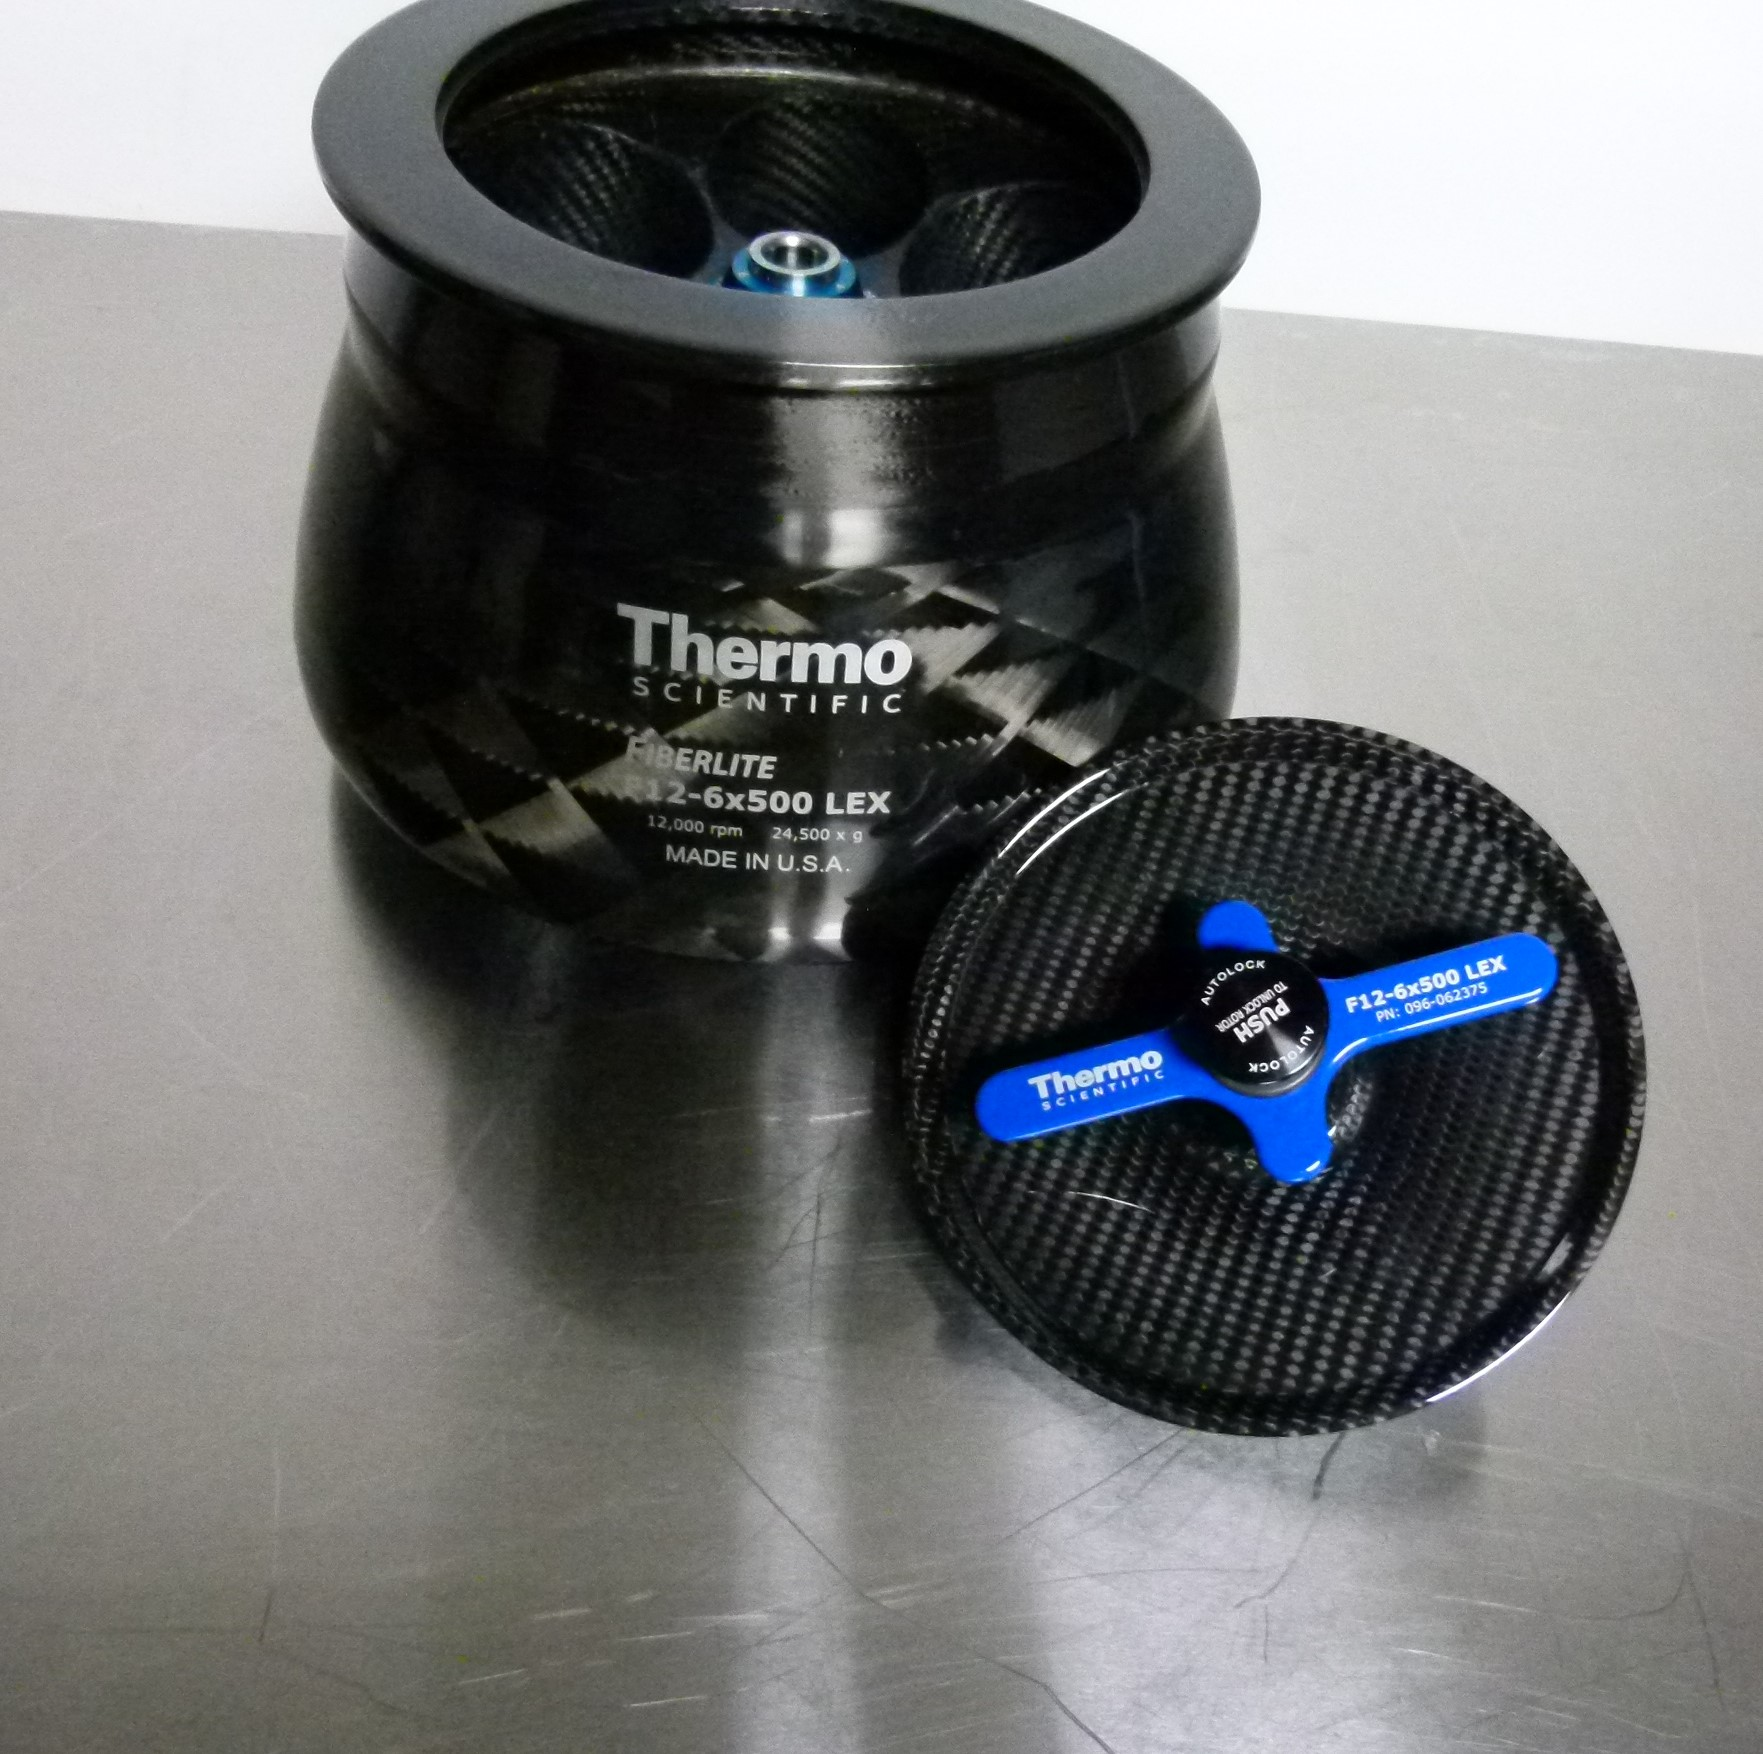 Thermo Scientific Fiberlite F12 - 6x500 LEX